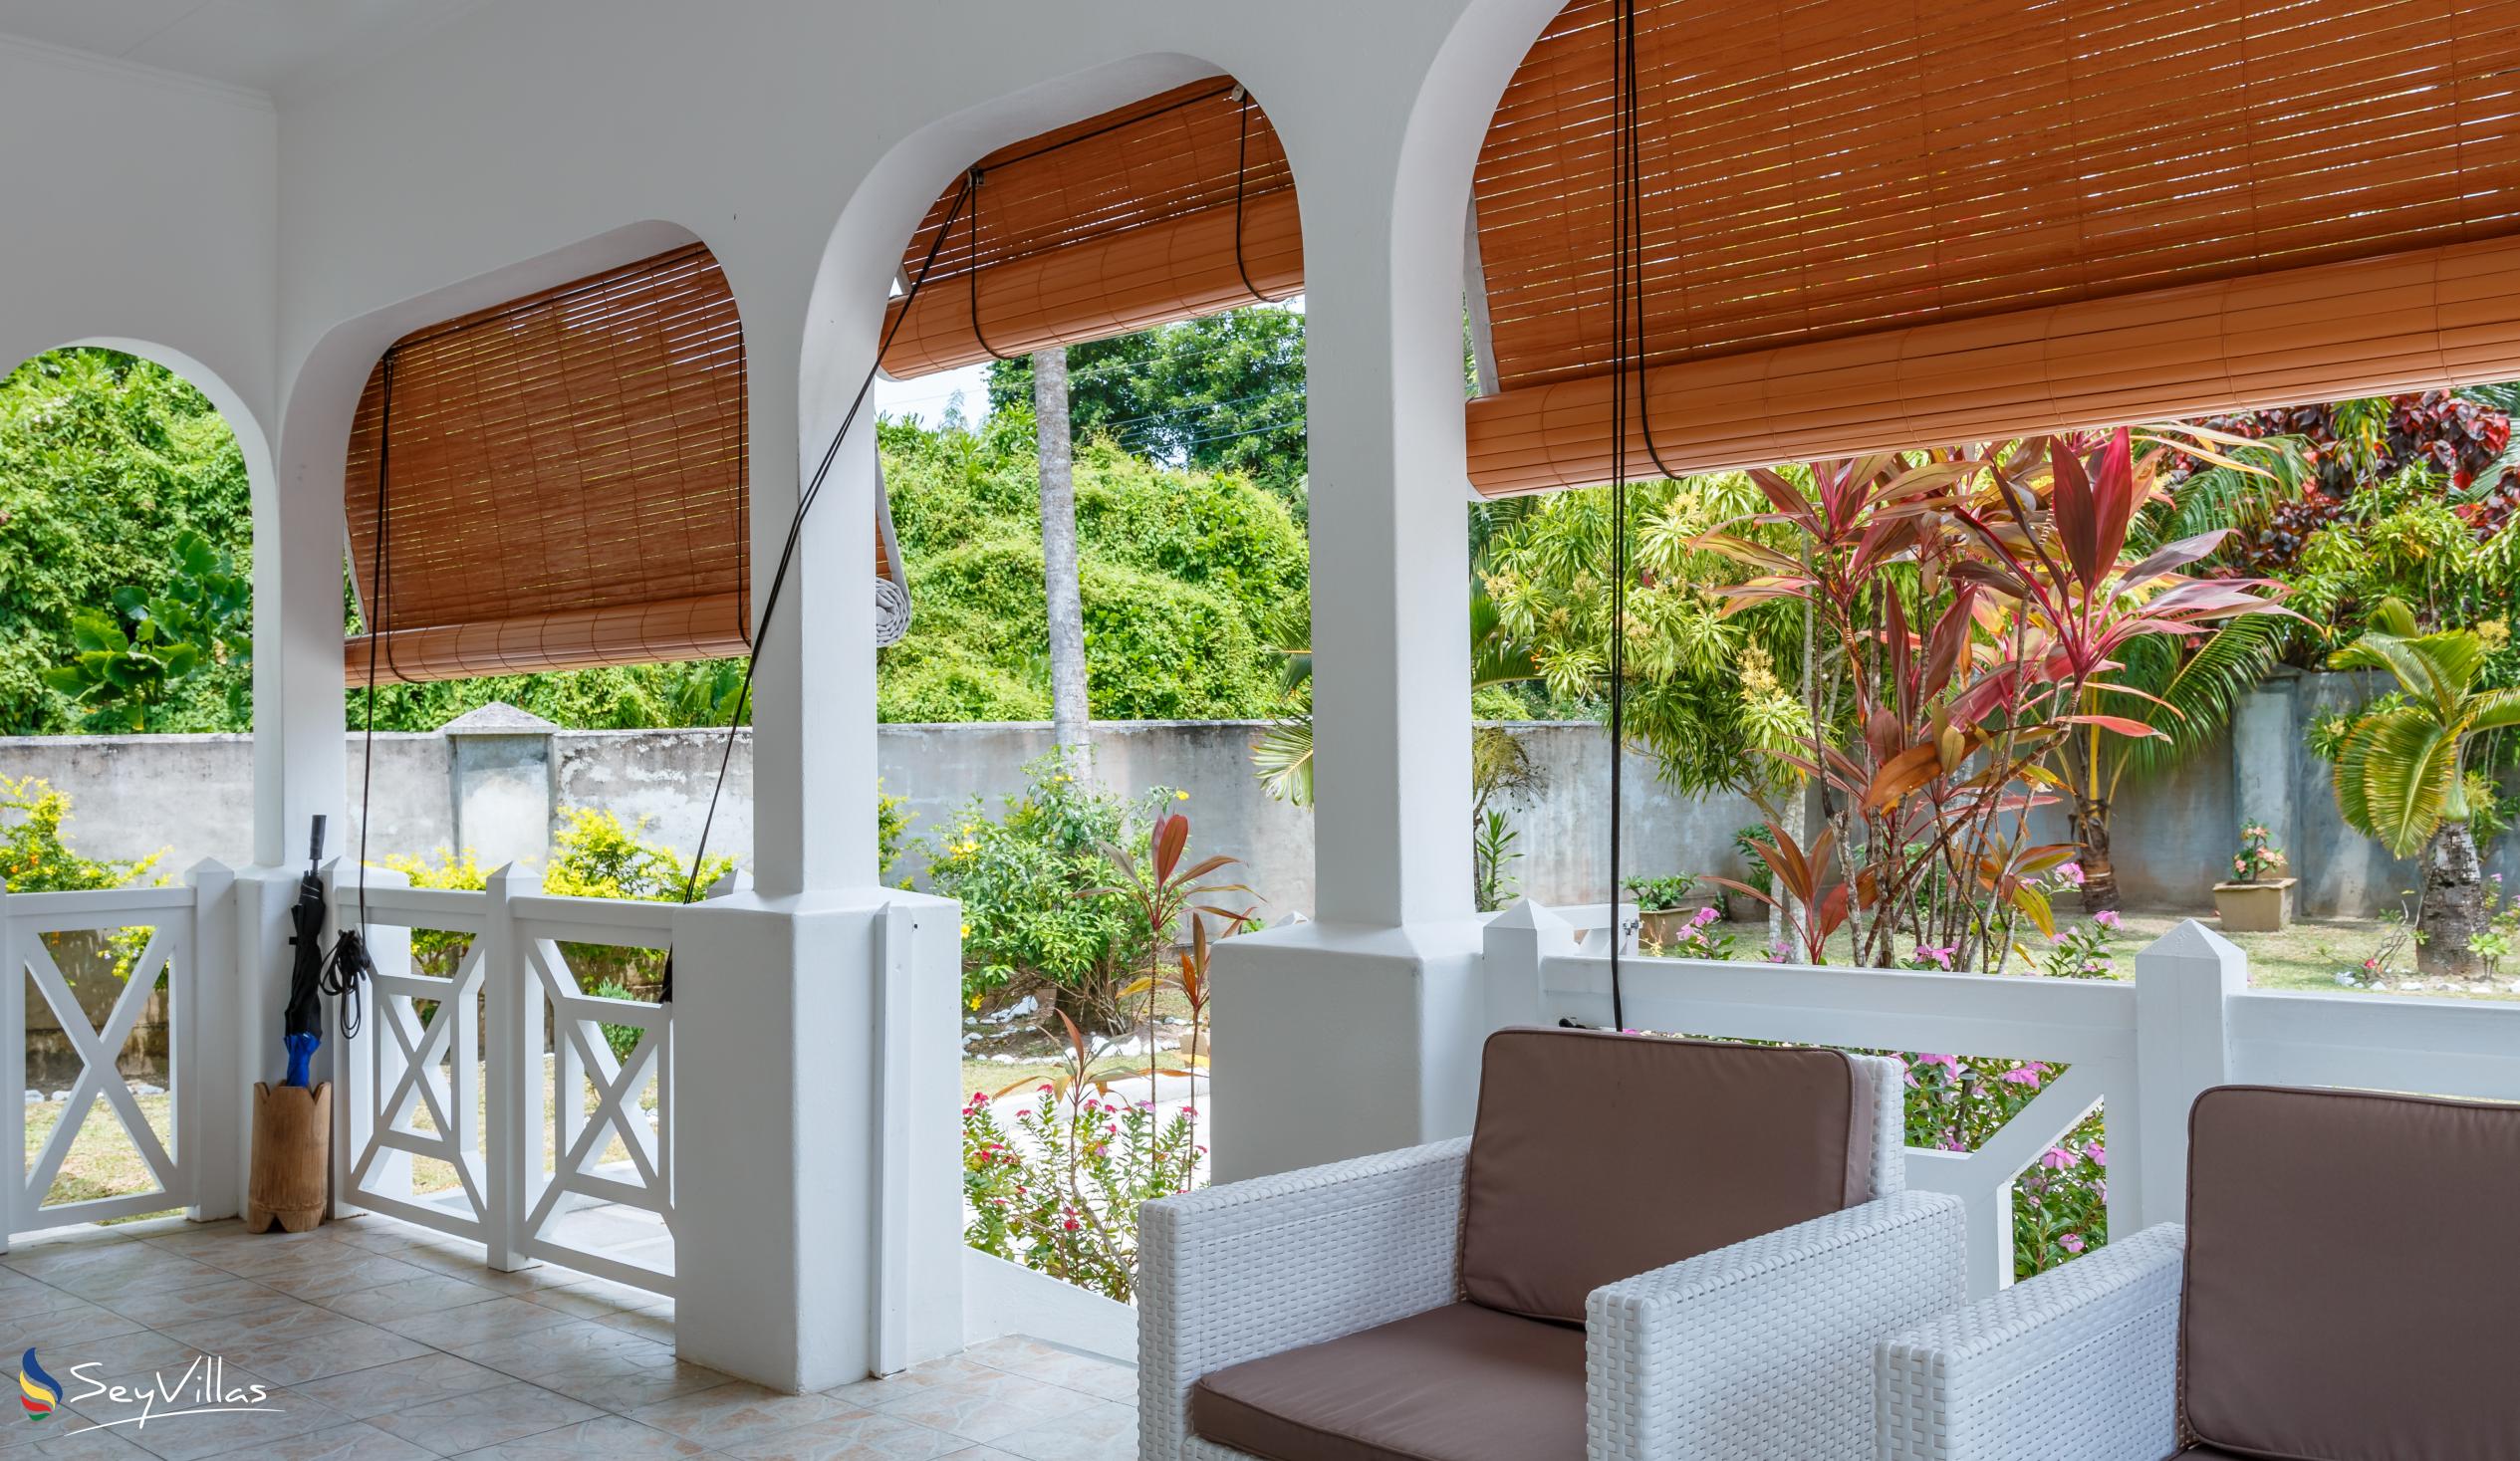 Foto 27: Coco Blanche (Maison Coco) - Villa complète - Mahé (Seychelles)